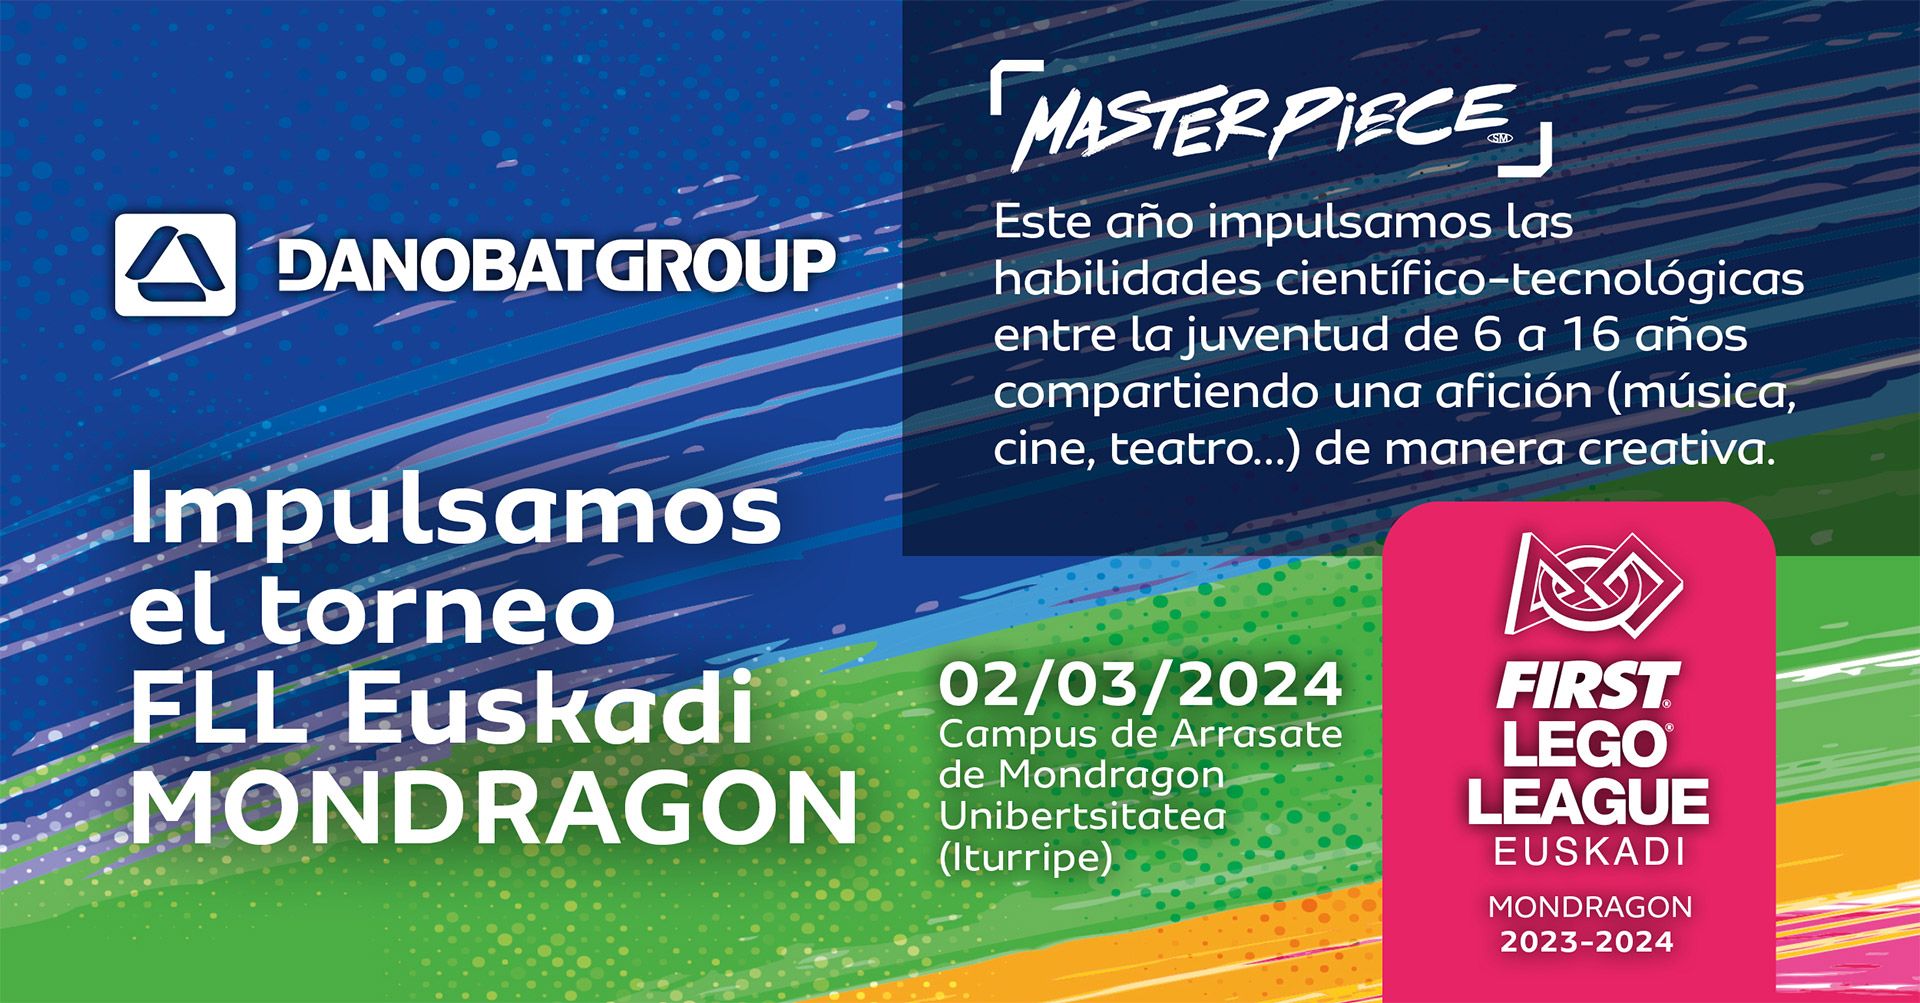 Danobatgroupek STEAM arloetan talentua sustatzeko apustua indartu du, First Lego League Euskadi-MONDRAGON txapelketa babestuz